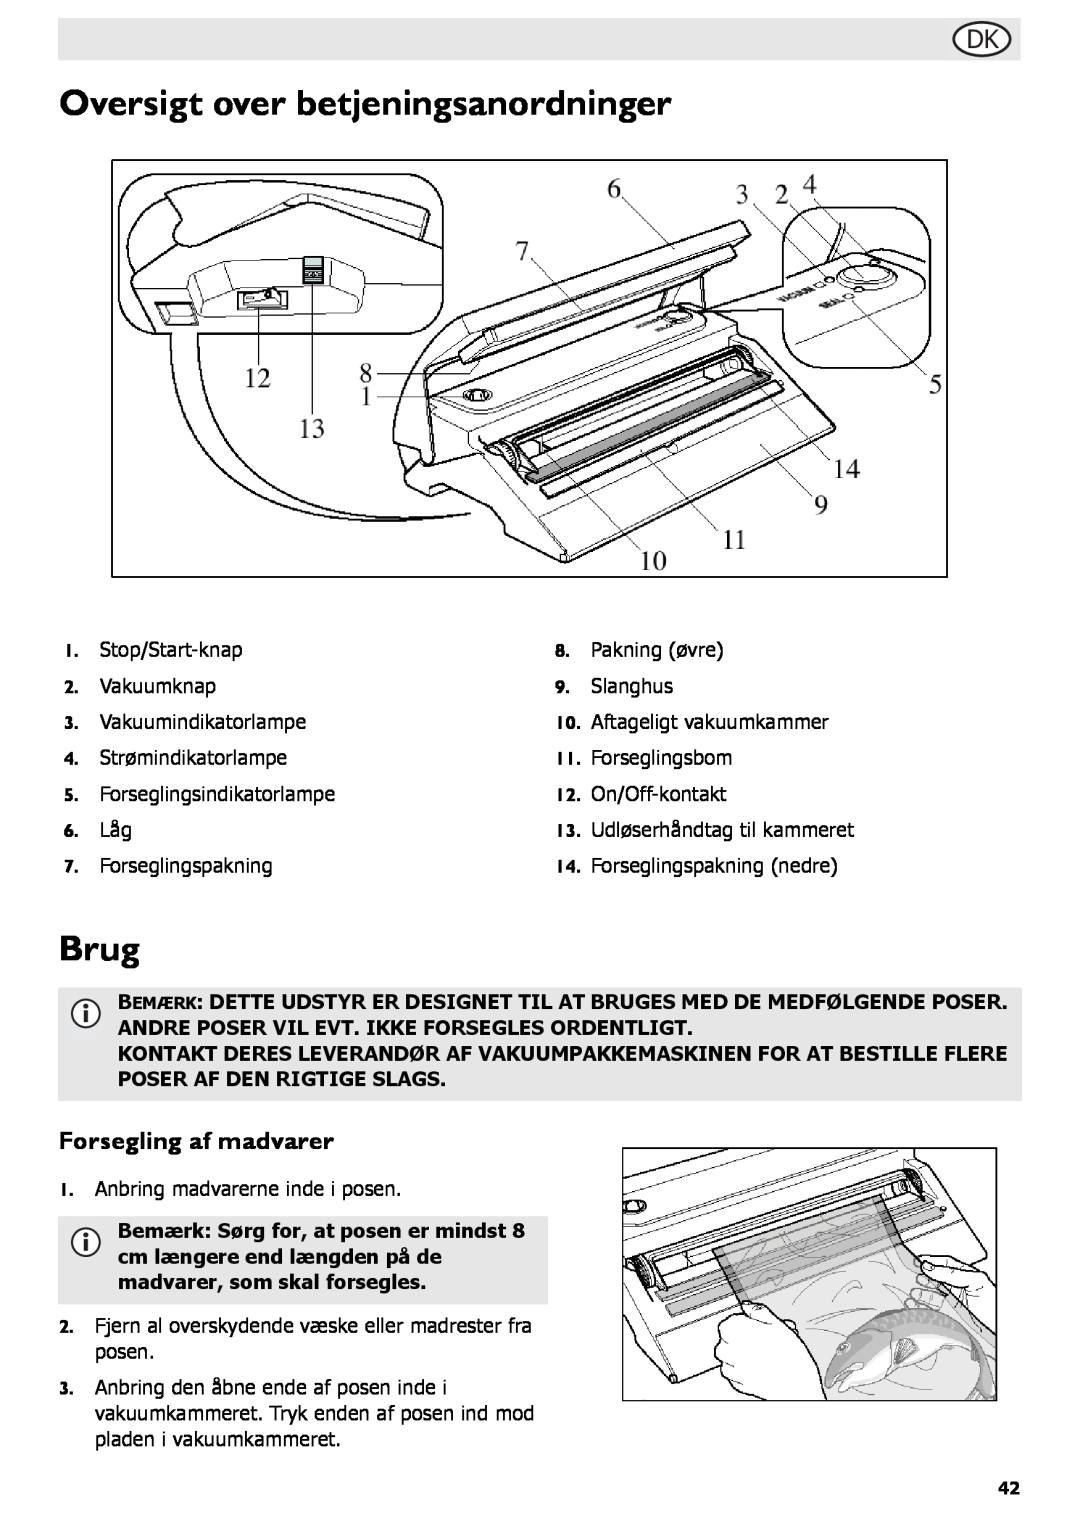 Buffalo Tools S097 instruction manual Oversigt over betjeningsanordninger, Brug, Forsegling af madvarer 